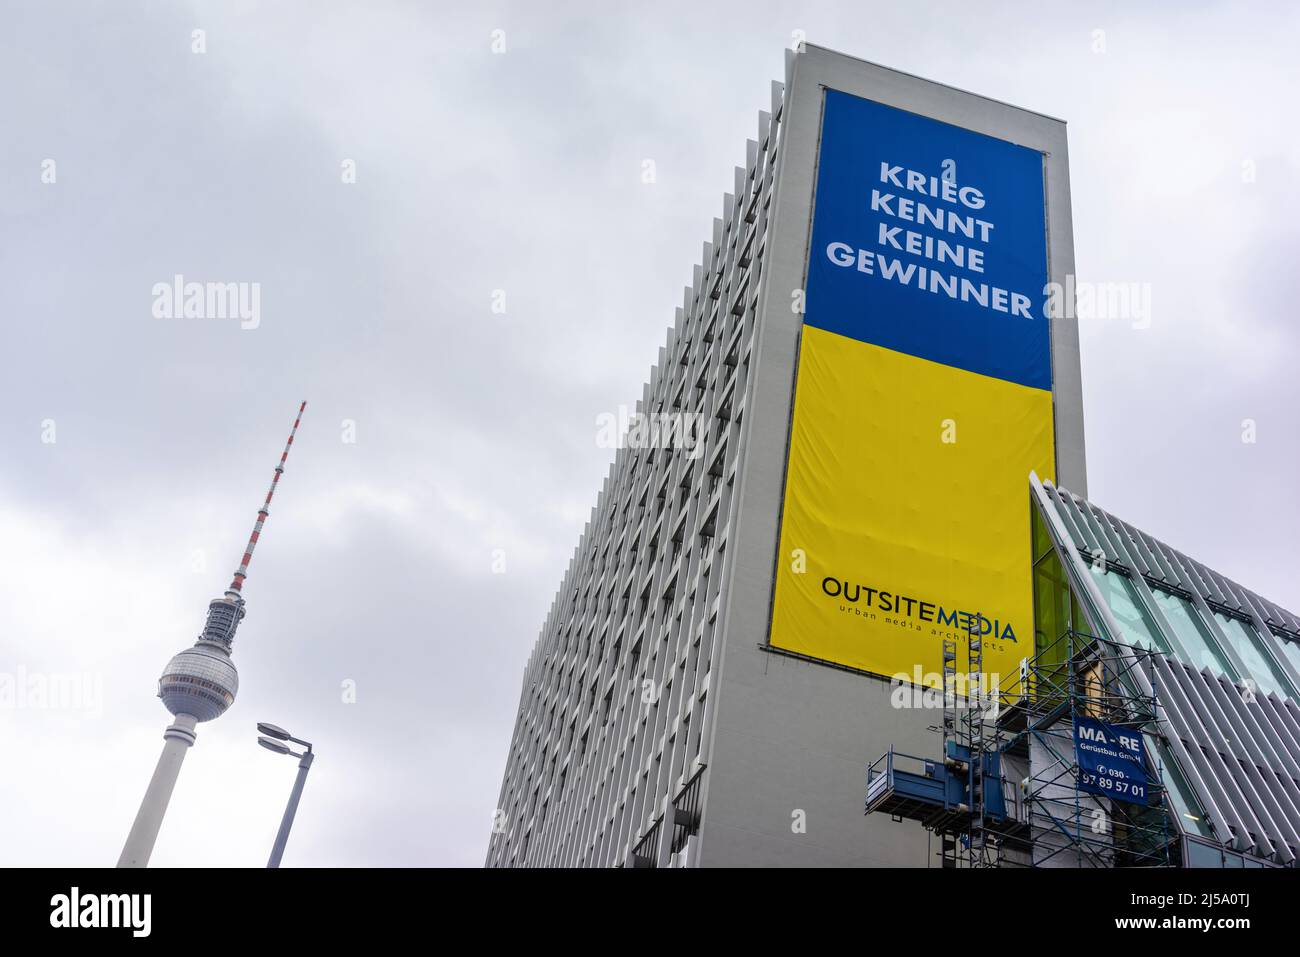 Krieg kennt keine Gewinner (War knows no winners) banner in solidarity with Ukraine at the Alexanderplatz in Berlin, Germany, Europe Stock Photo